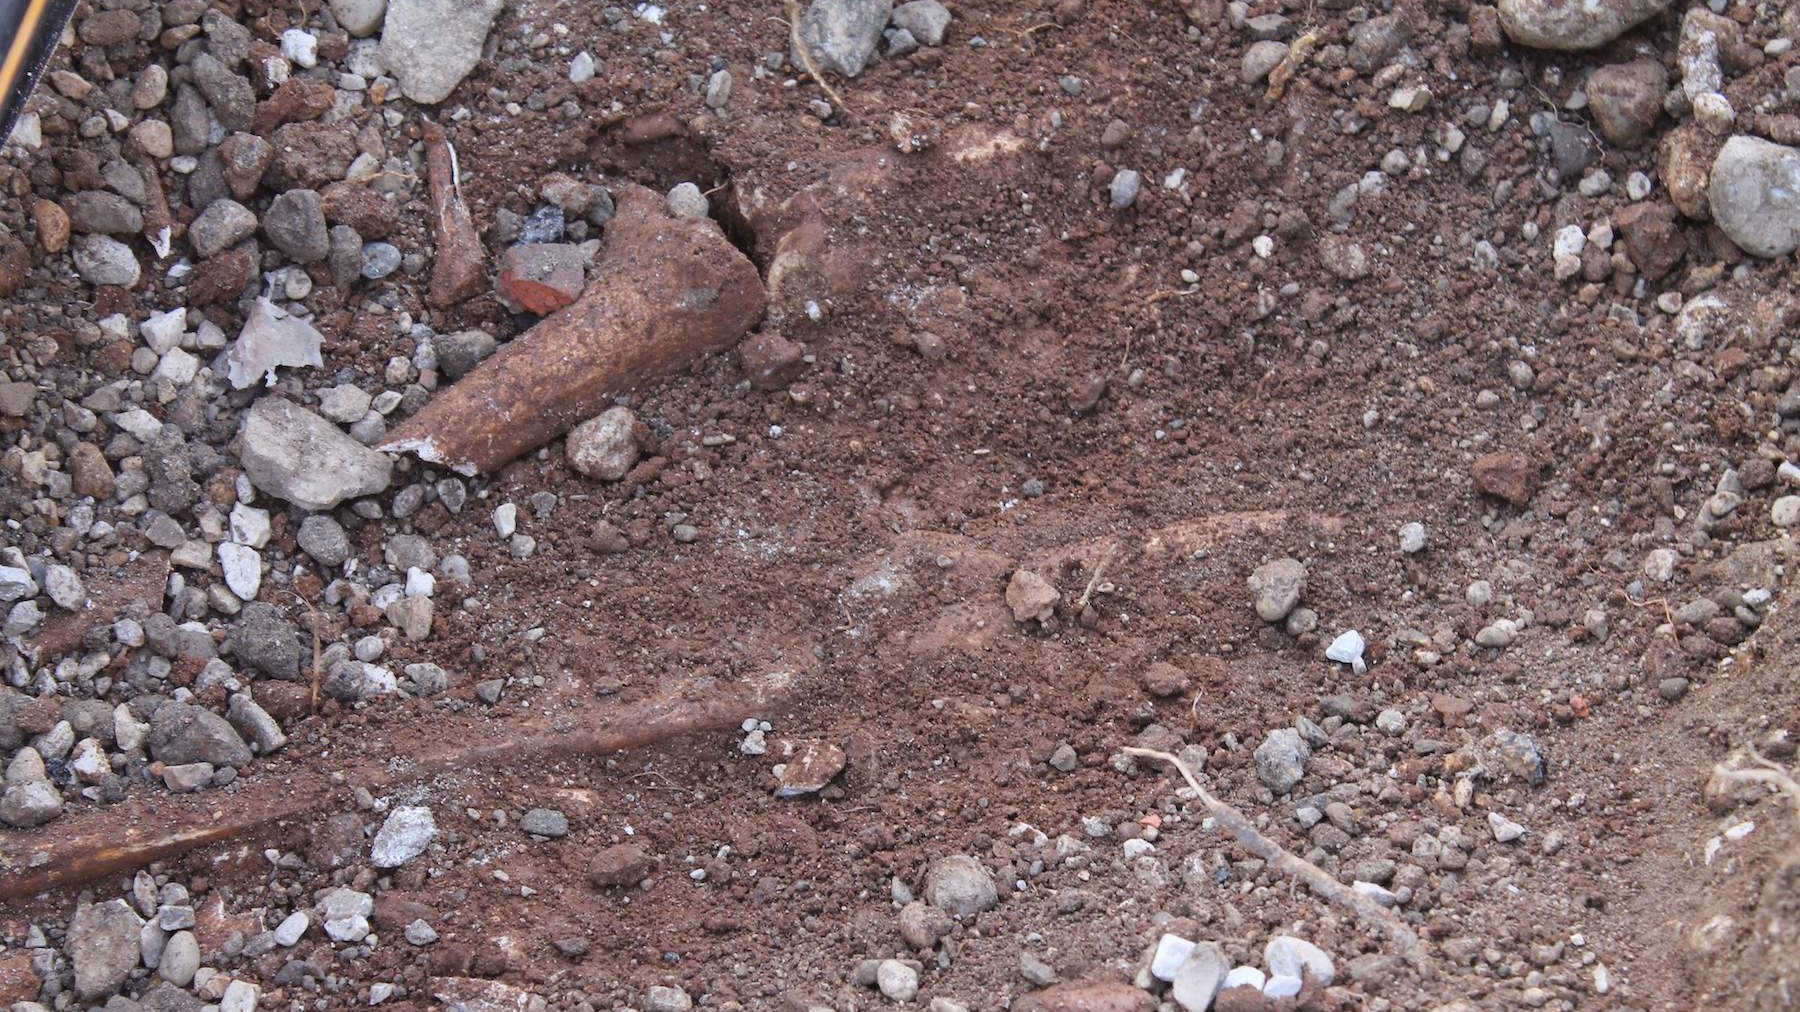 Islamska zajednica od gradonačelnika Mostara ponovo zatražila temeljitu ekshumaciju posmrtnih ostataka s lokaliteta Lakišića harema